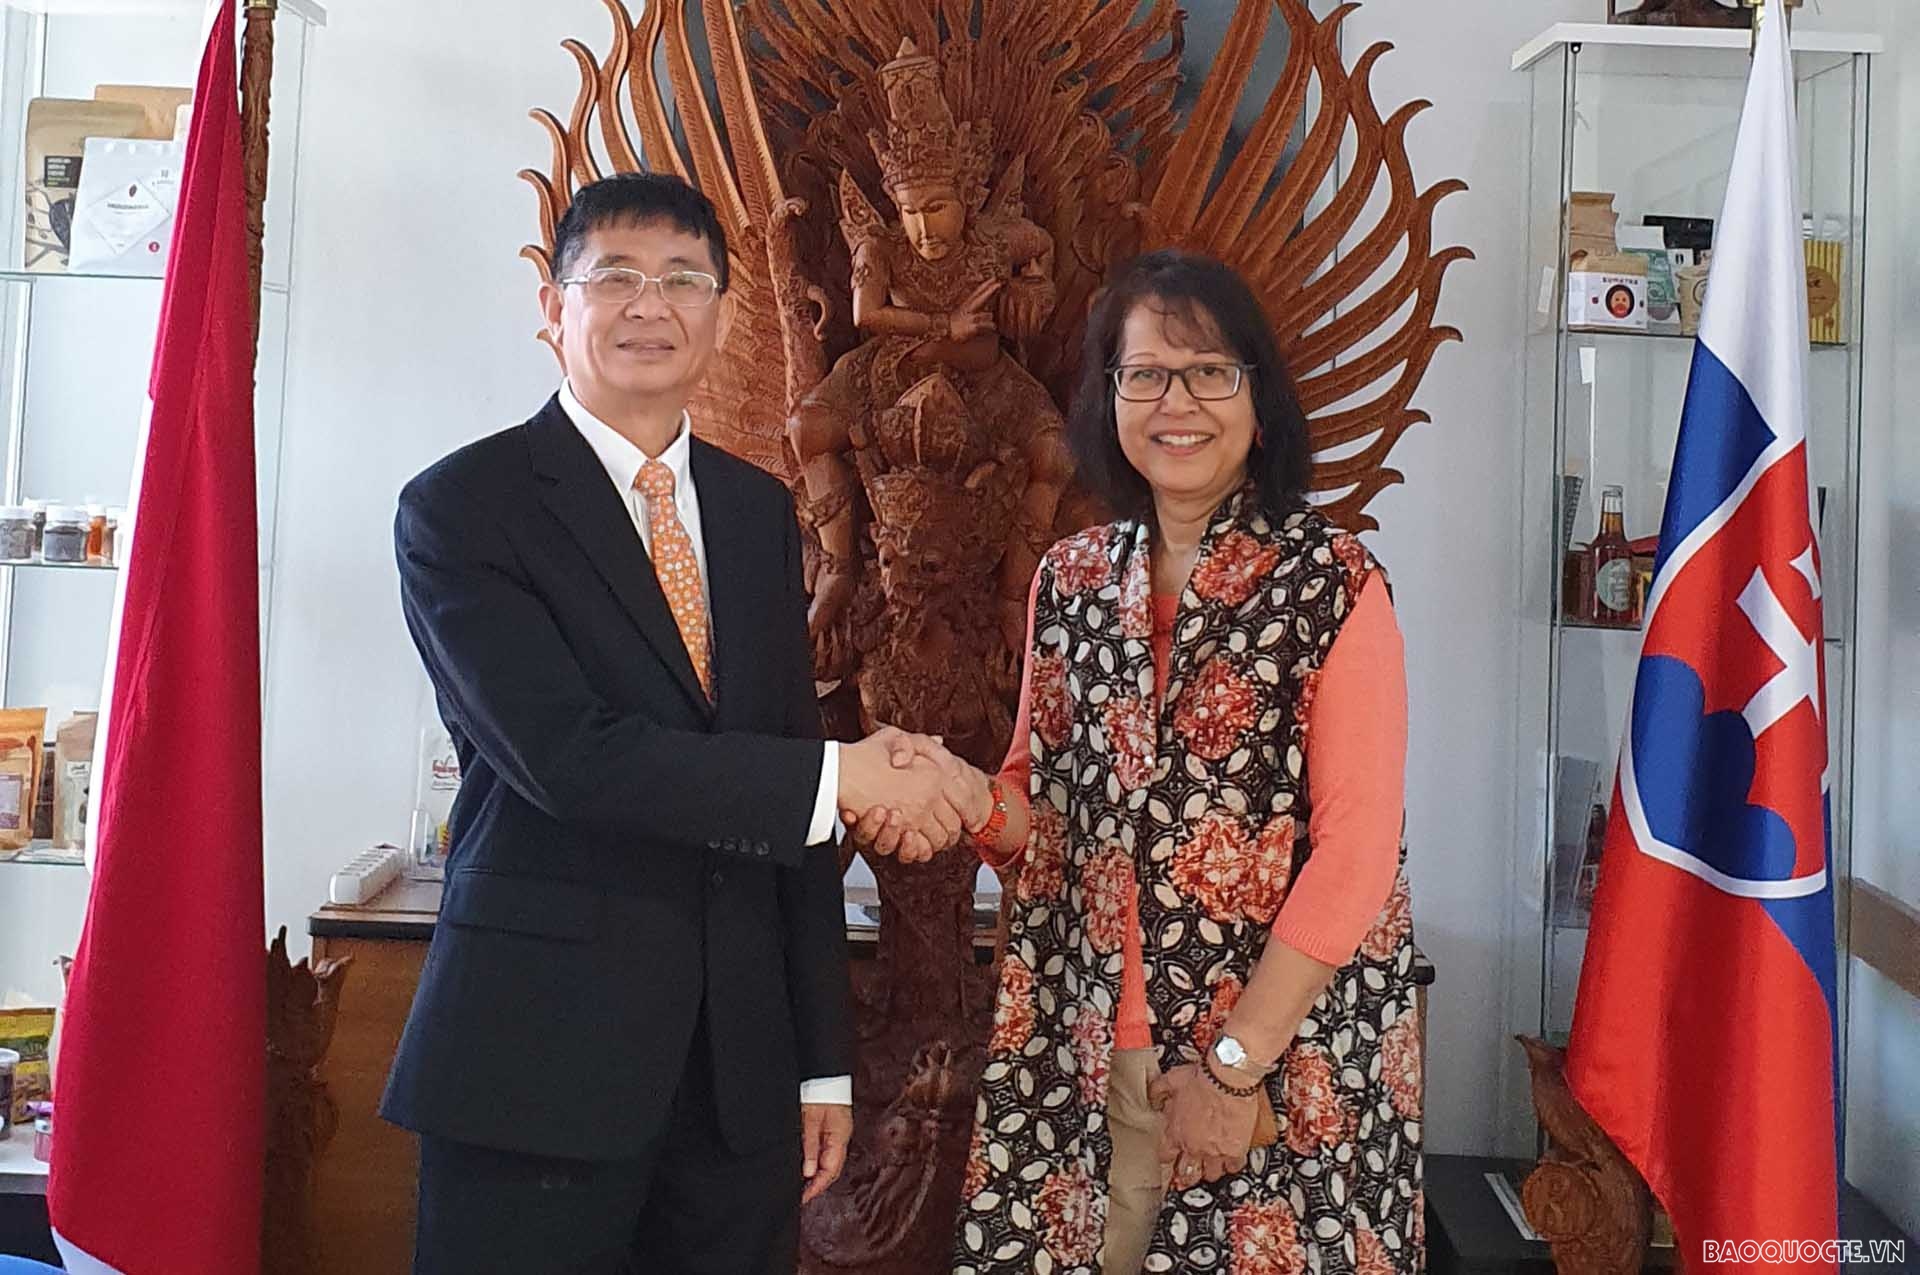 Đại sứ Việt Nam tại Slovakia Nguyễn Tuấn và Đại sứ Indonesia tại Slovakia.